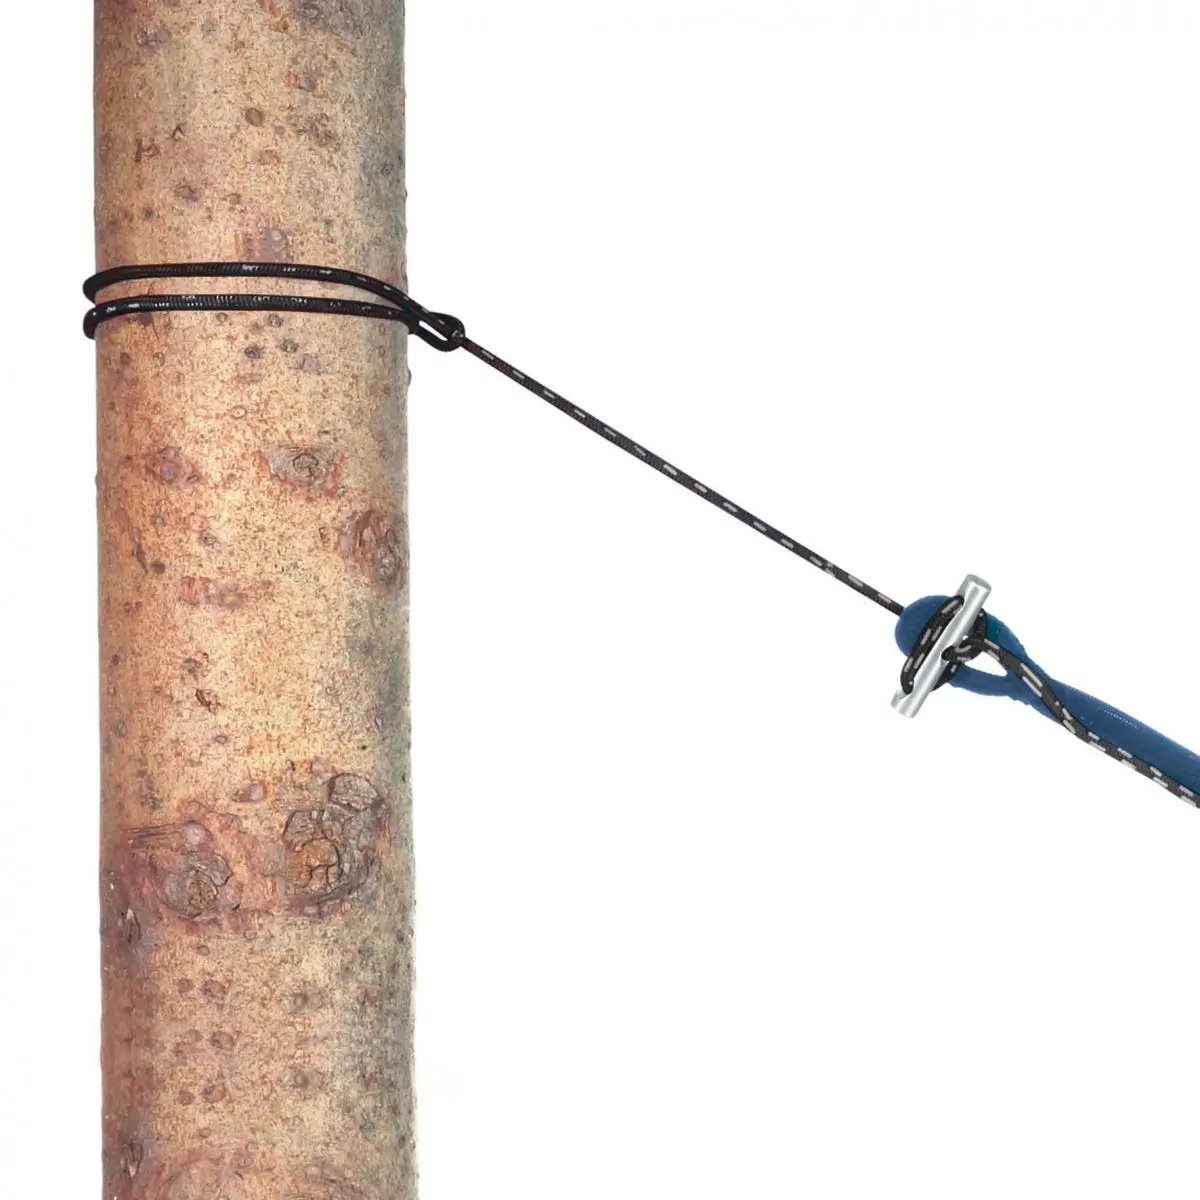 Mikrokötél kötélkészlet függőágyhoz - 150 kg-ig terhelhető